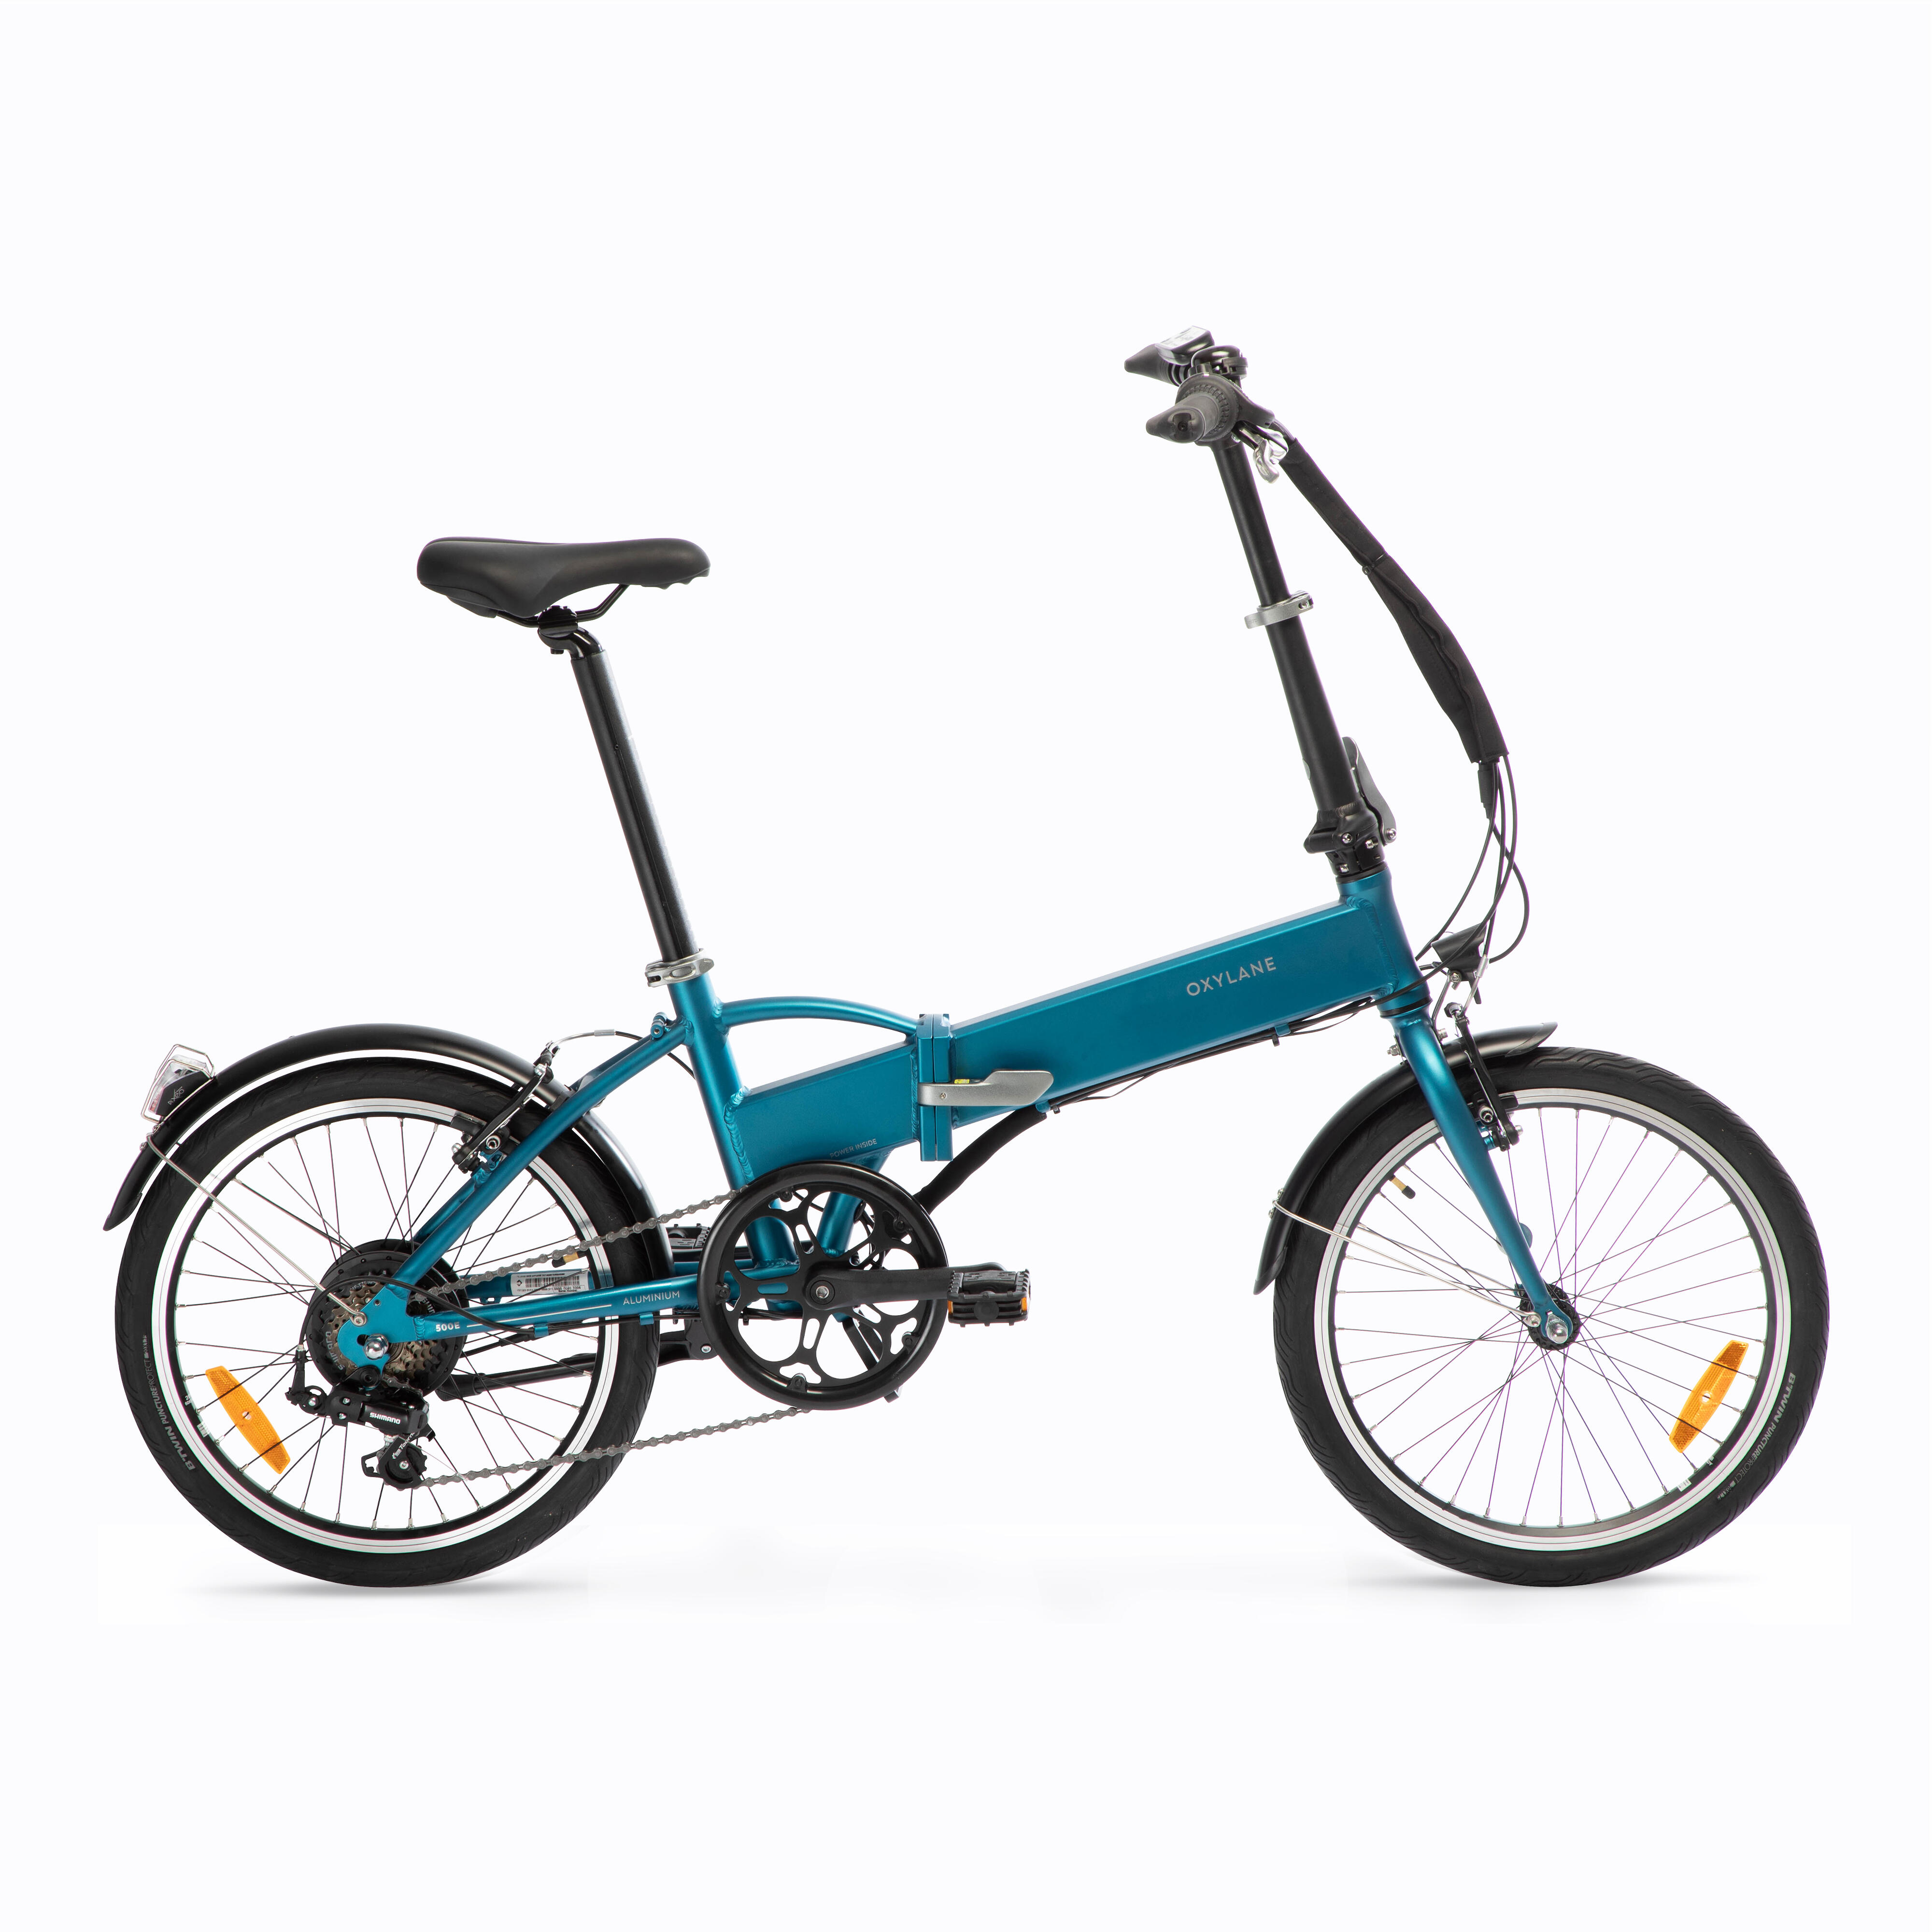 Bicicletă pliabilă cu asistență electrică TILT 500 E Albastru BTWIN imagine 2022